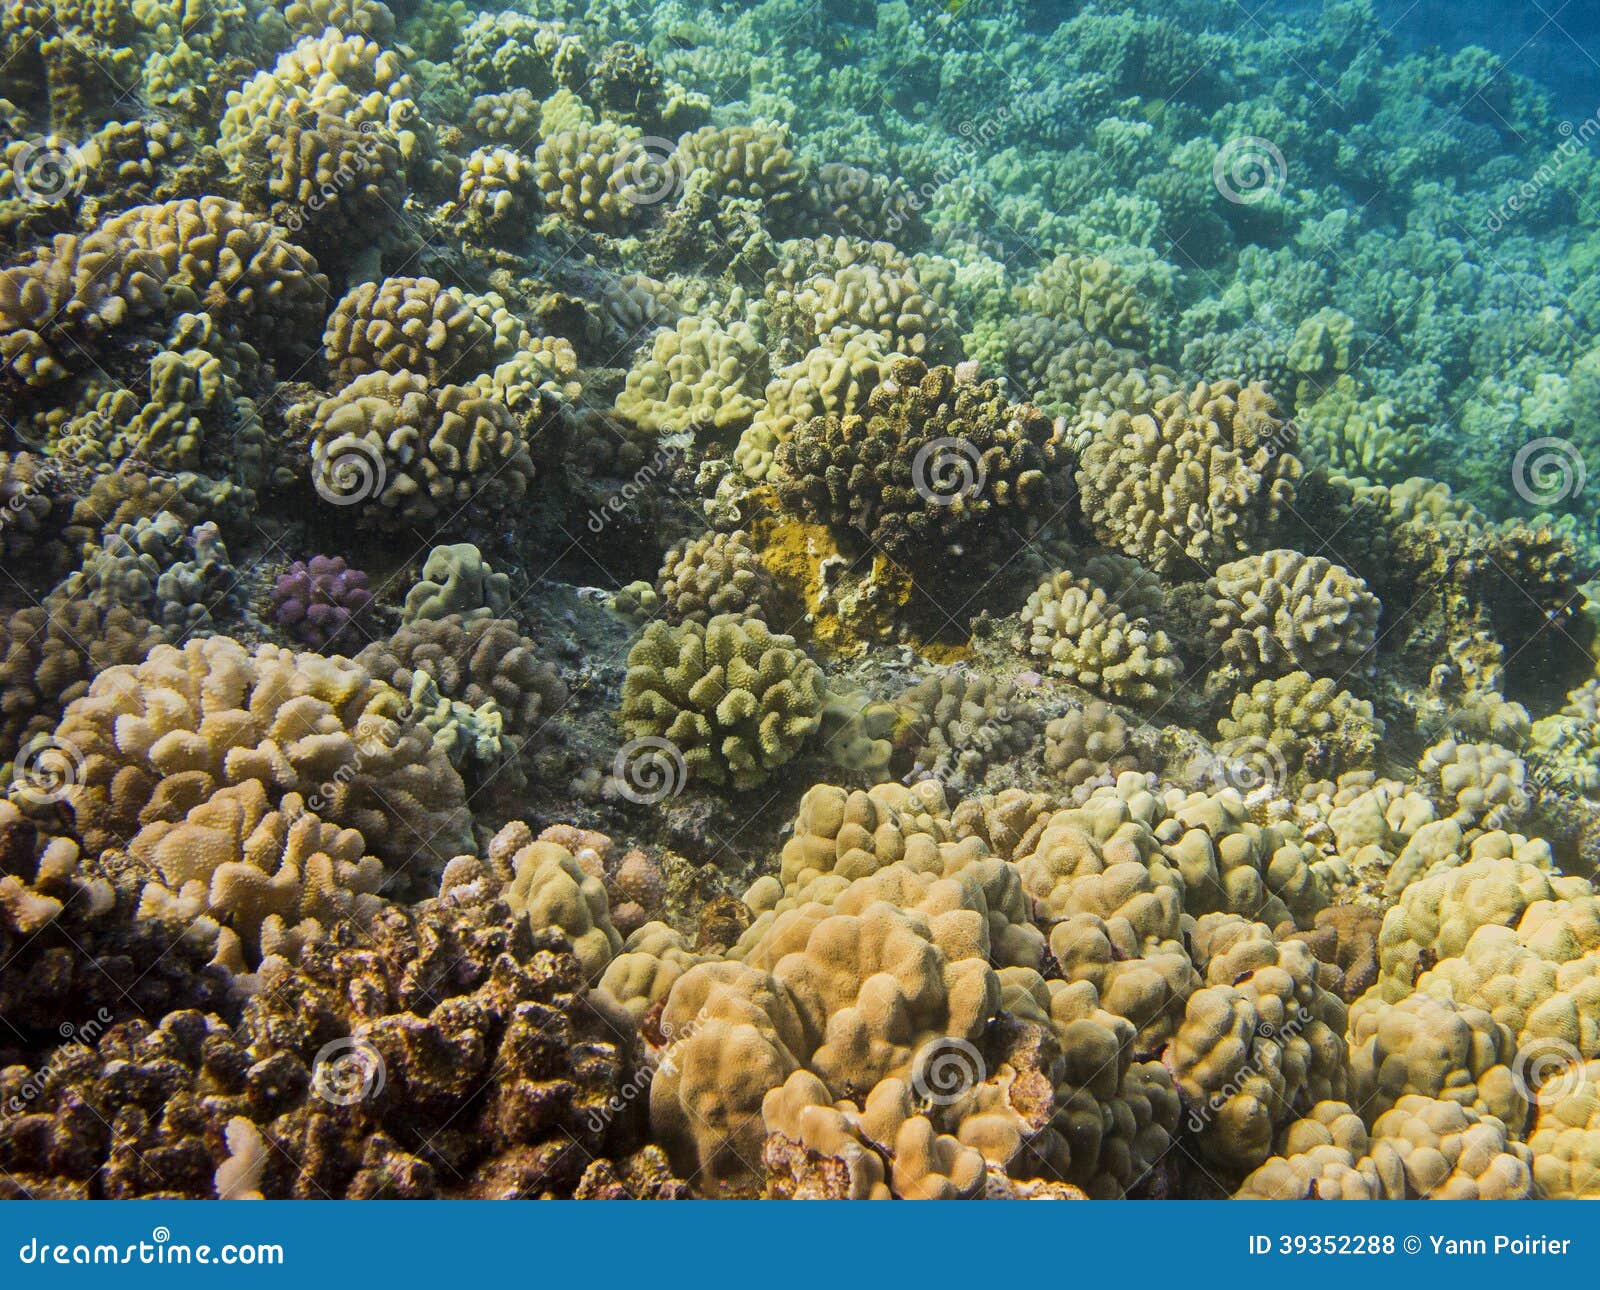 Hawaiian reef stock photo. Image of aquatic, ocean, coral - 39352288